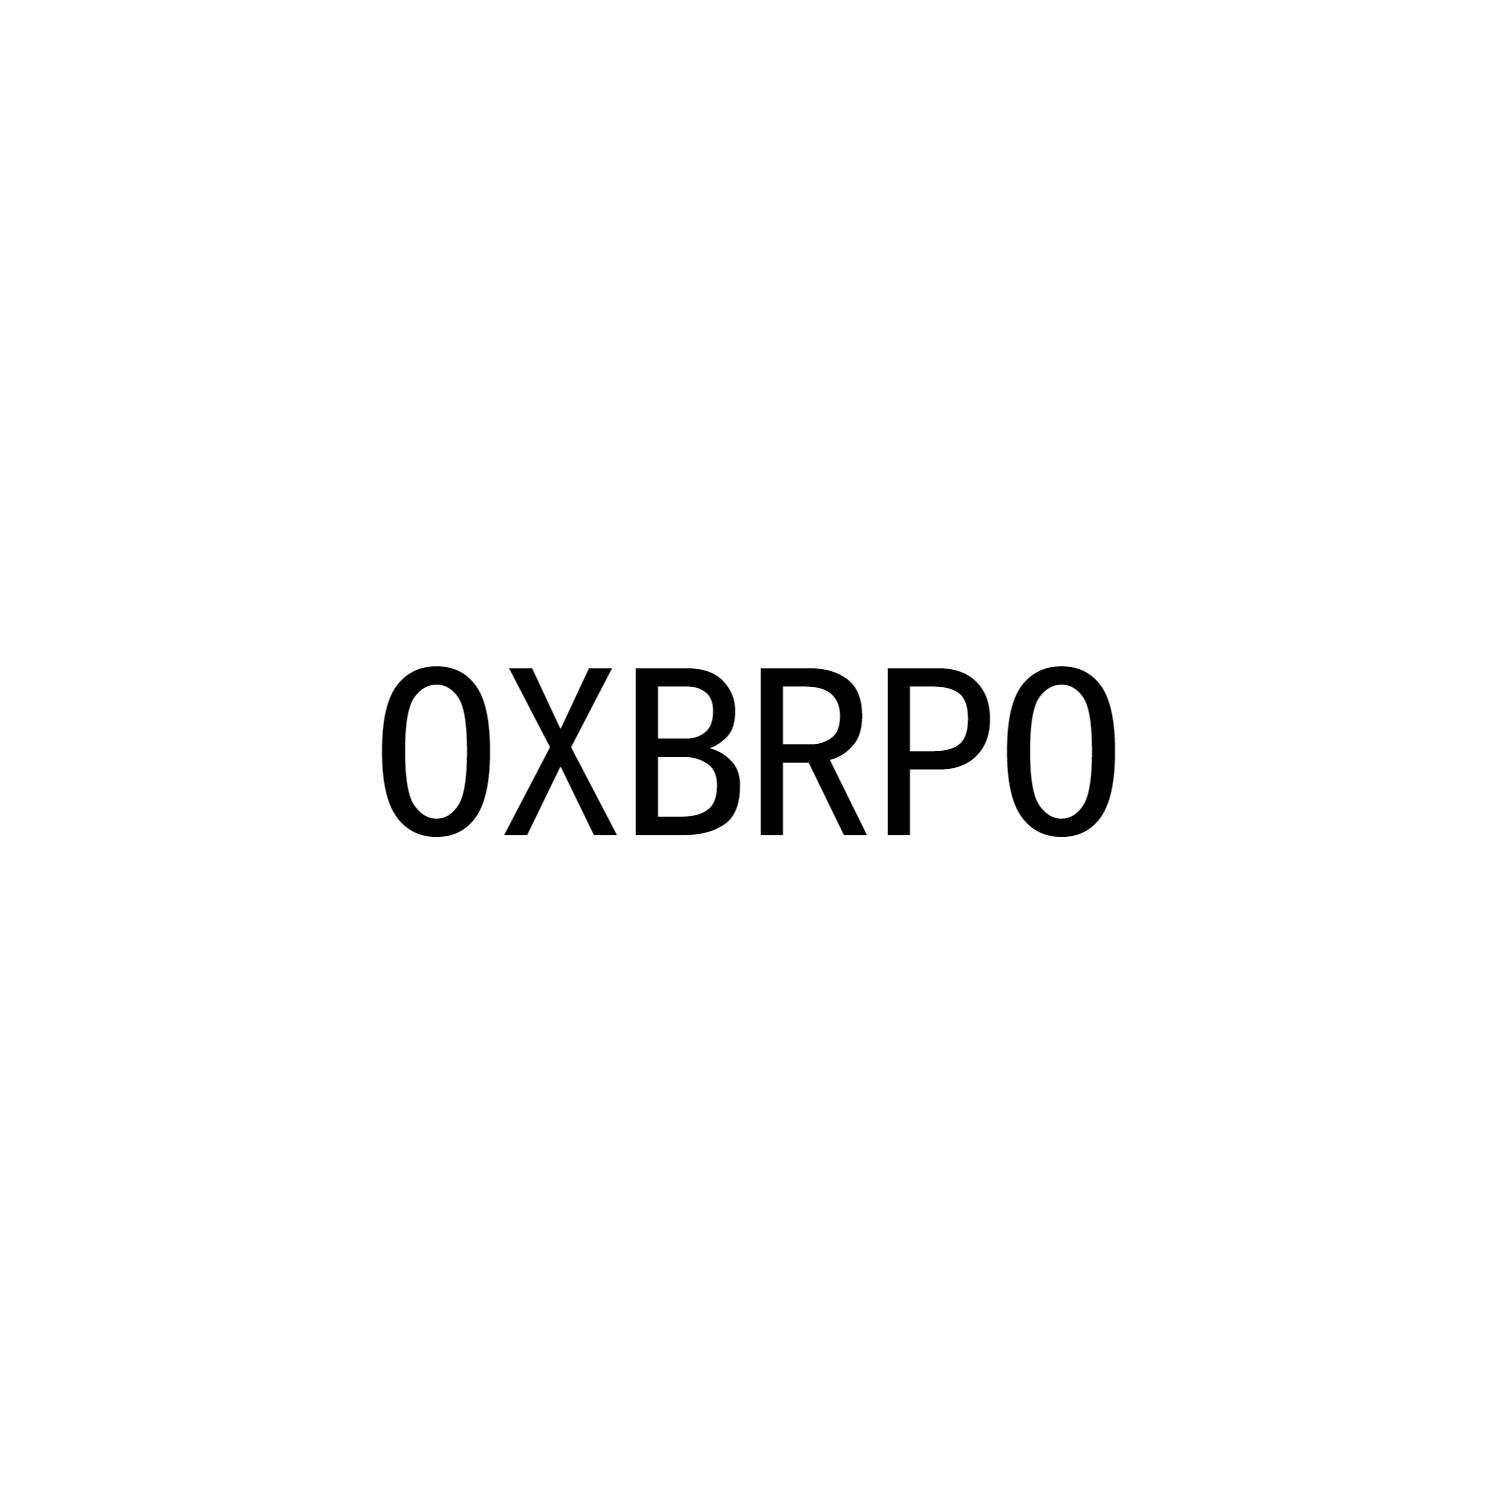 OXBRPO